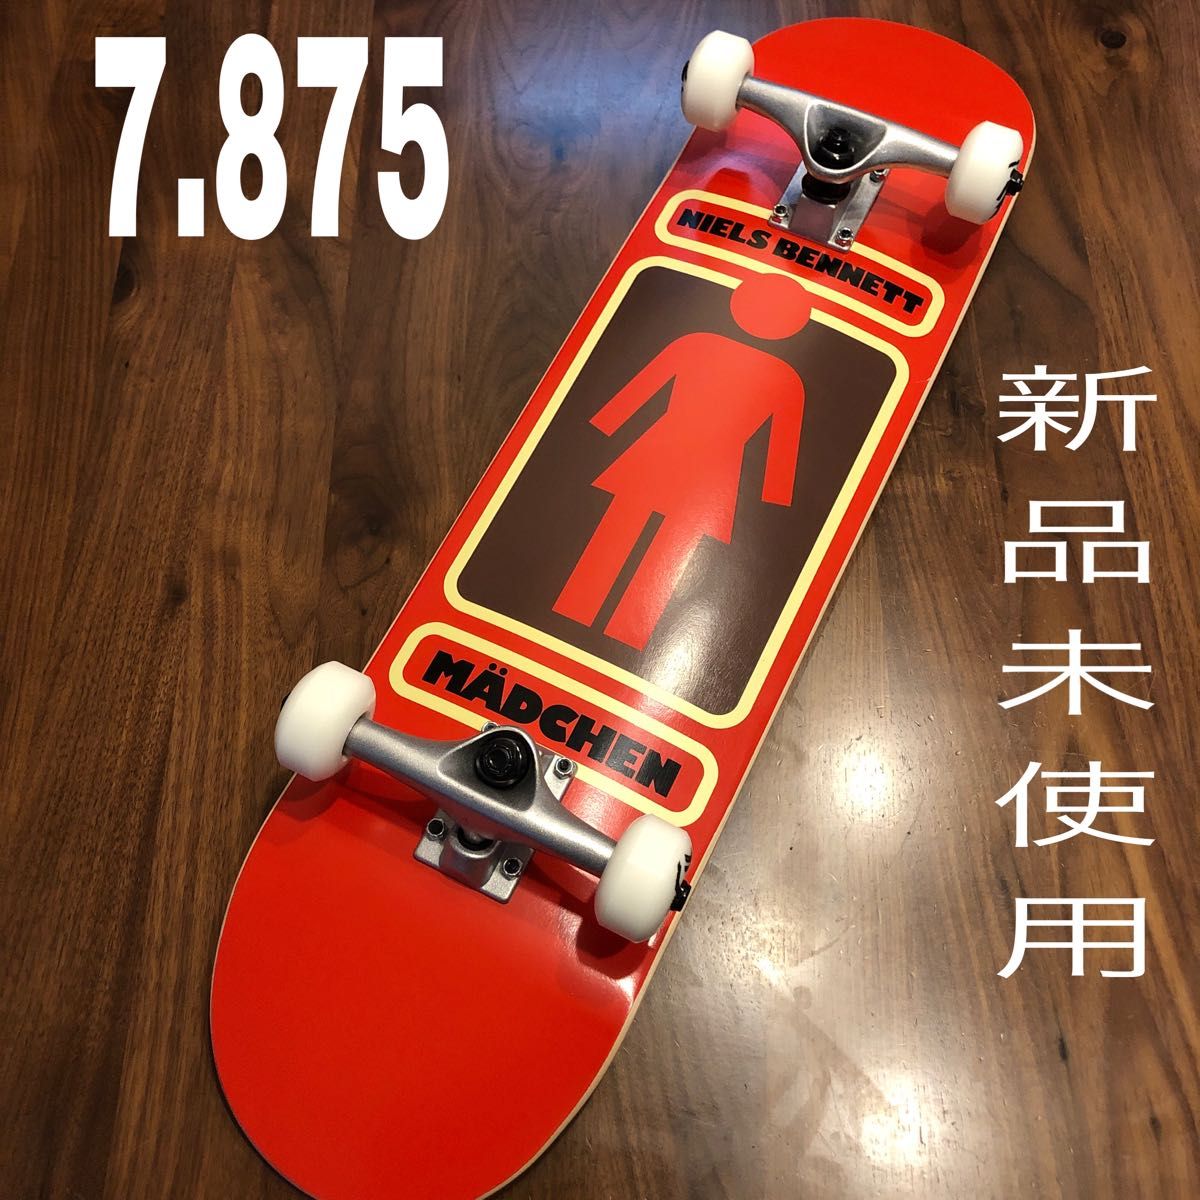 スケボーコンプリート GIRL 7 875 スケートボード 新品未使用 ガール 